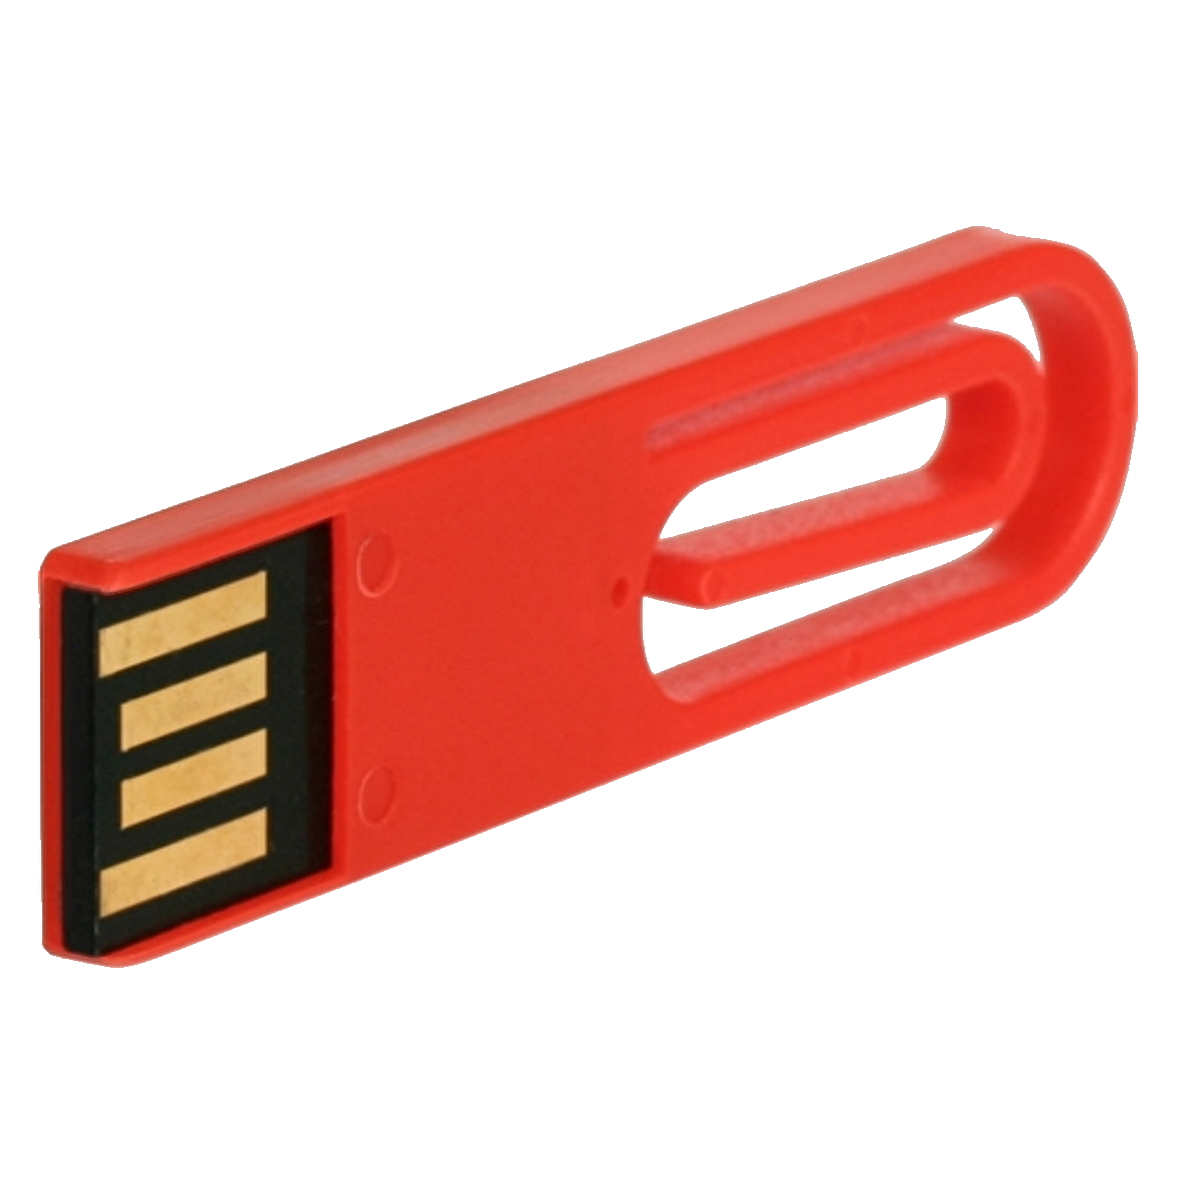 (Rot, ® 4 eCLIP USB GERMANY USB-Stick GB)